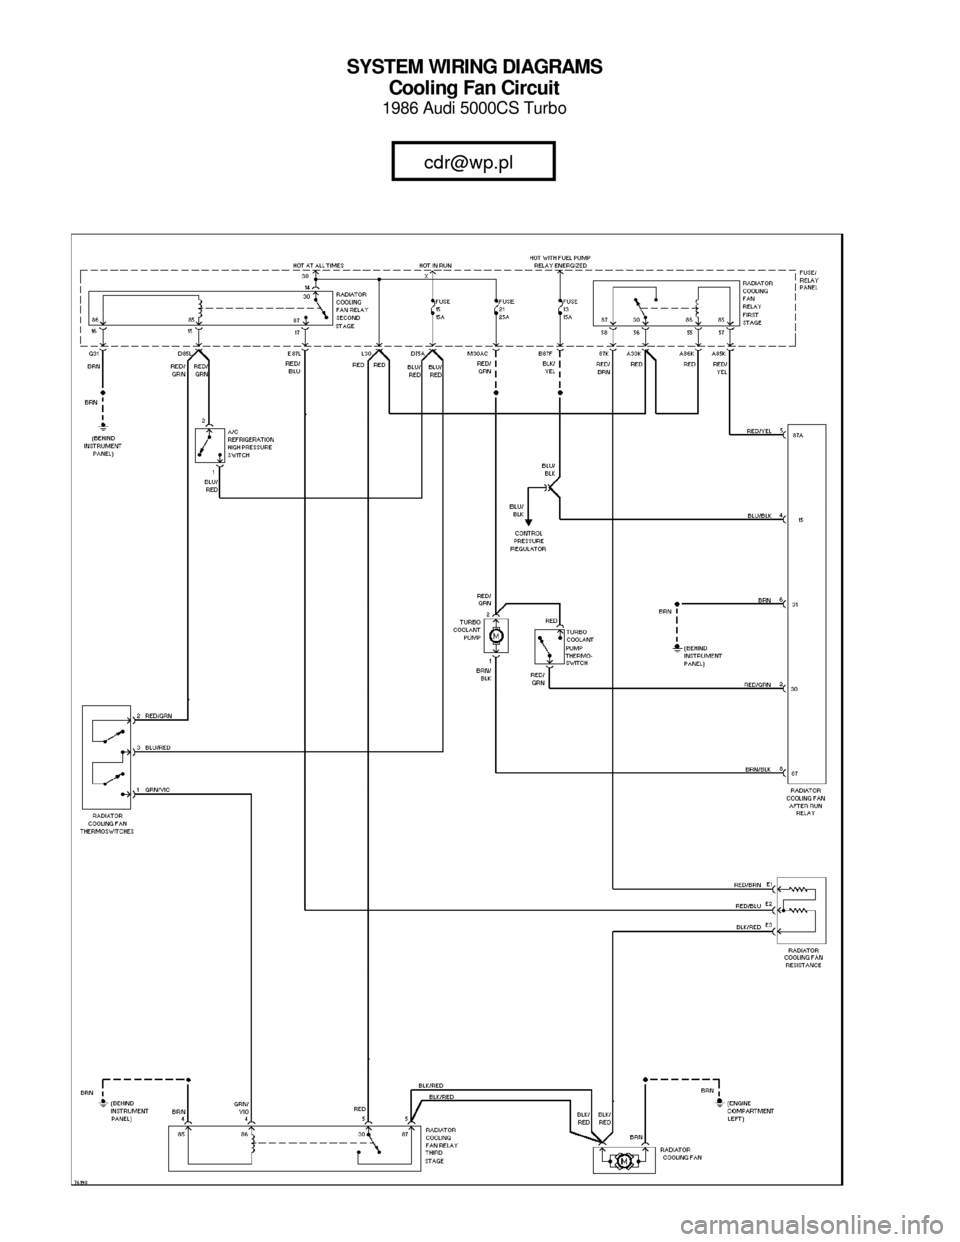 AUDI 5000CS 1986 C2 System Wiring Diagram 